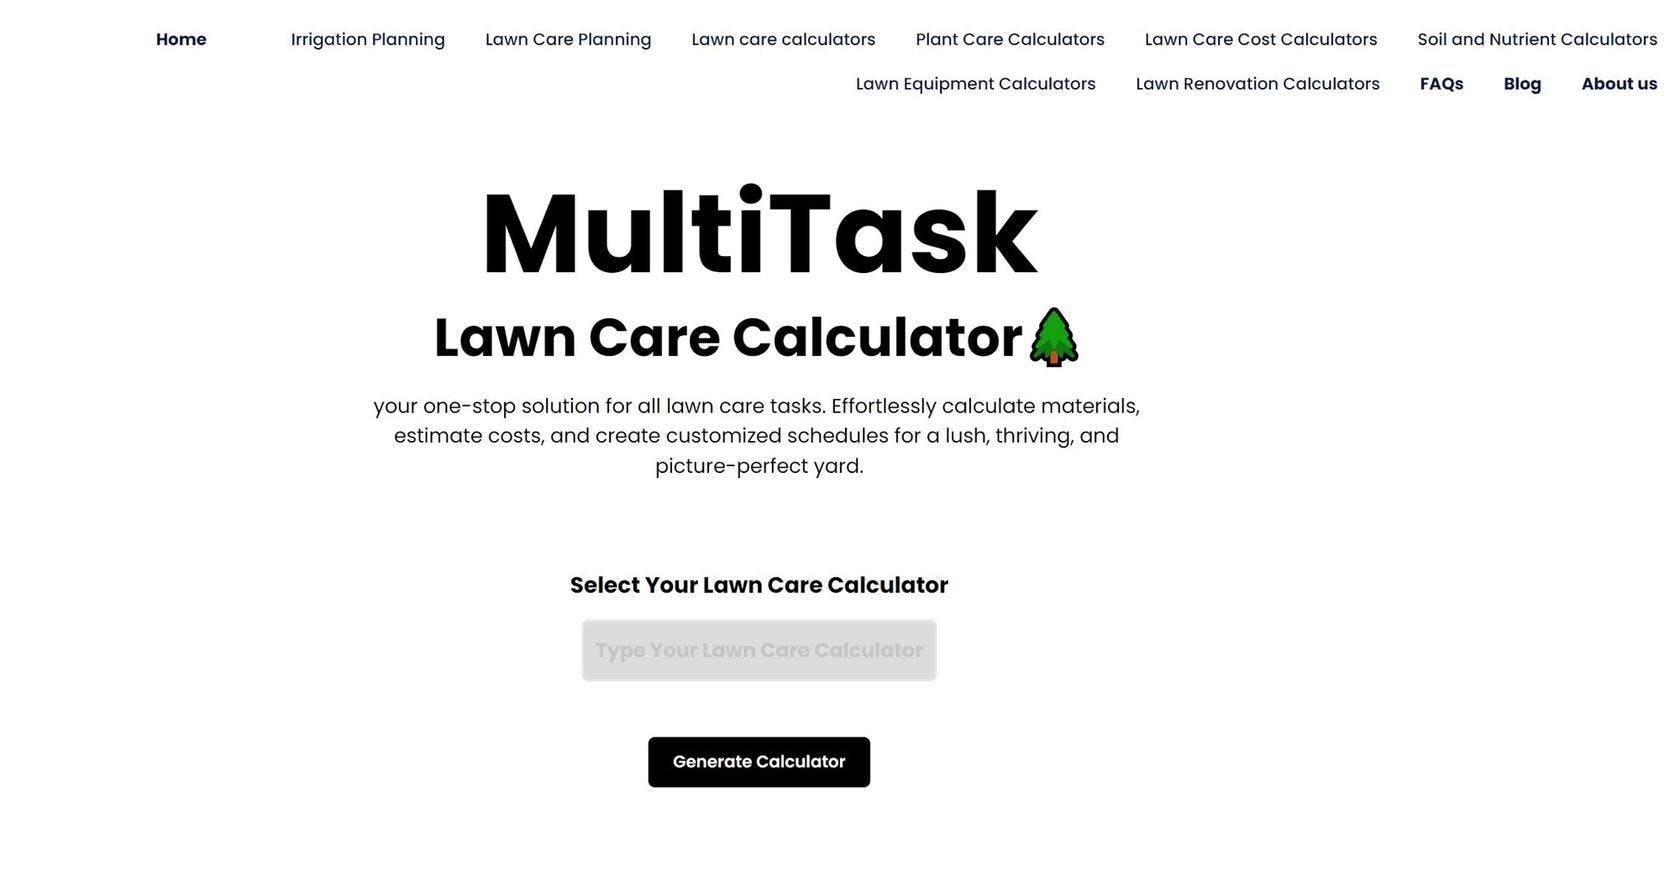 Lawn Care Calculator